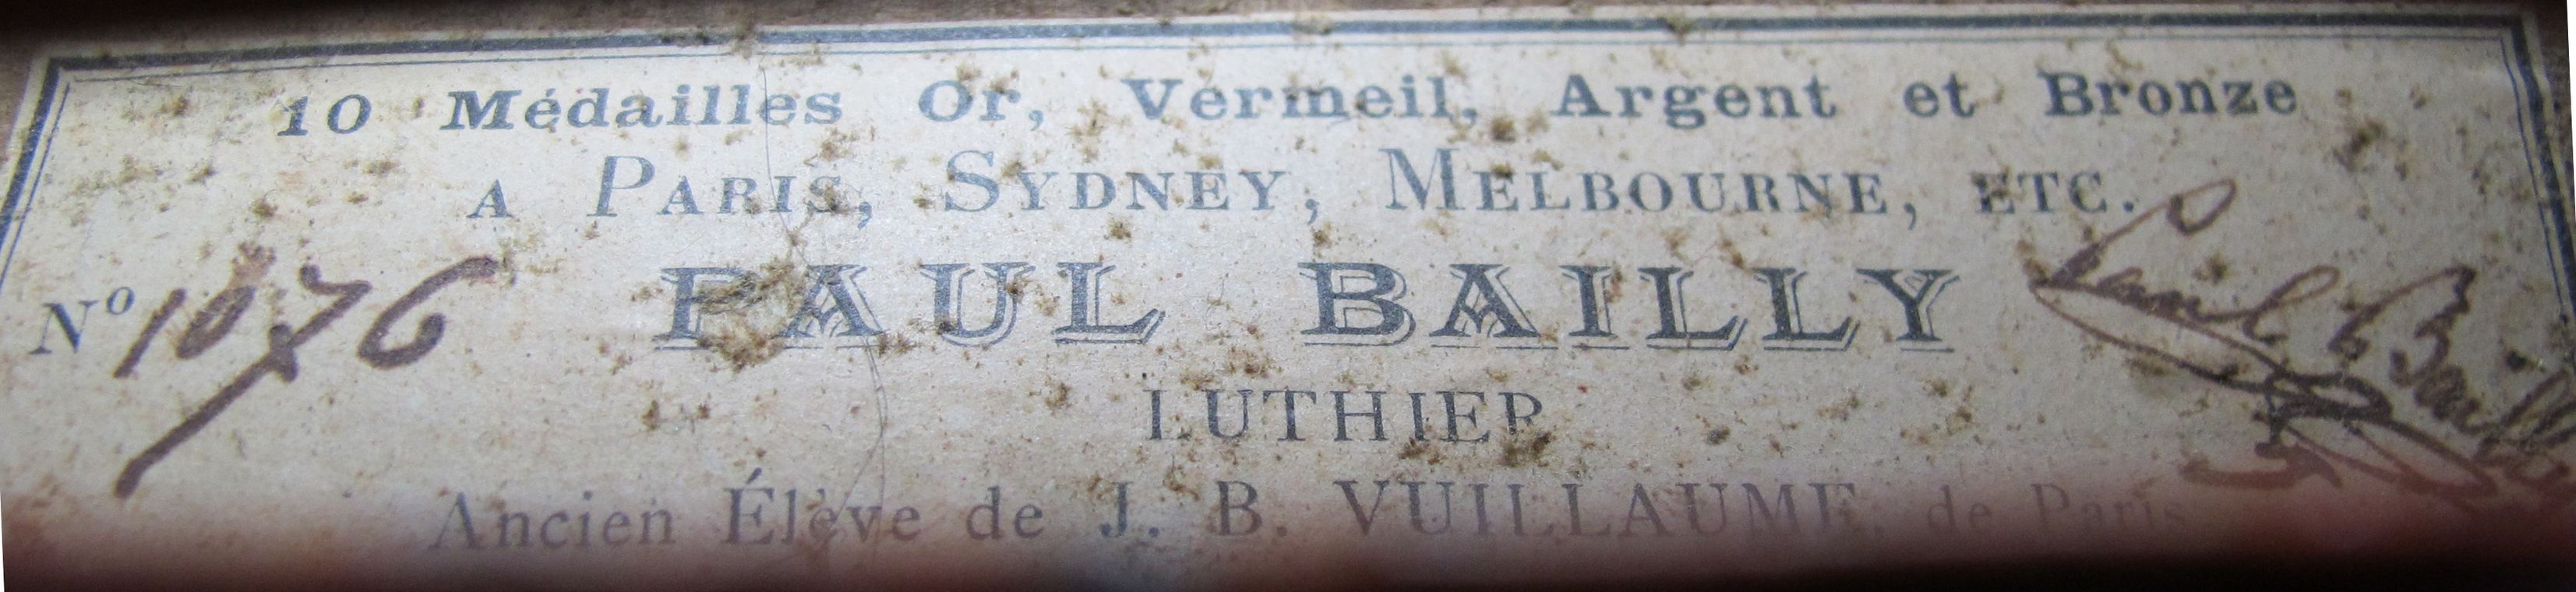 Etikette Geige Bailly um 1900